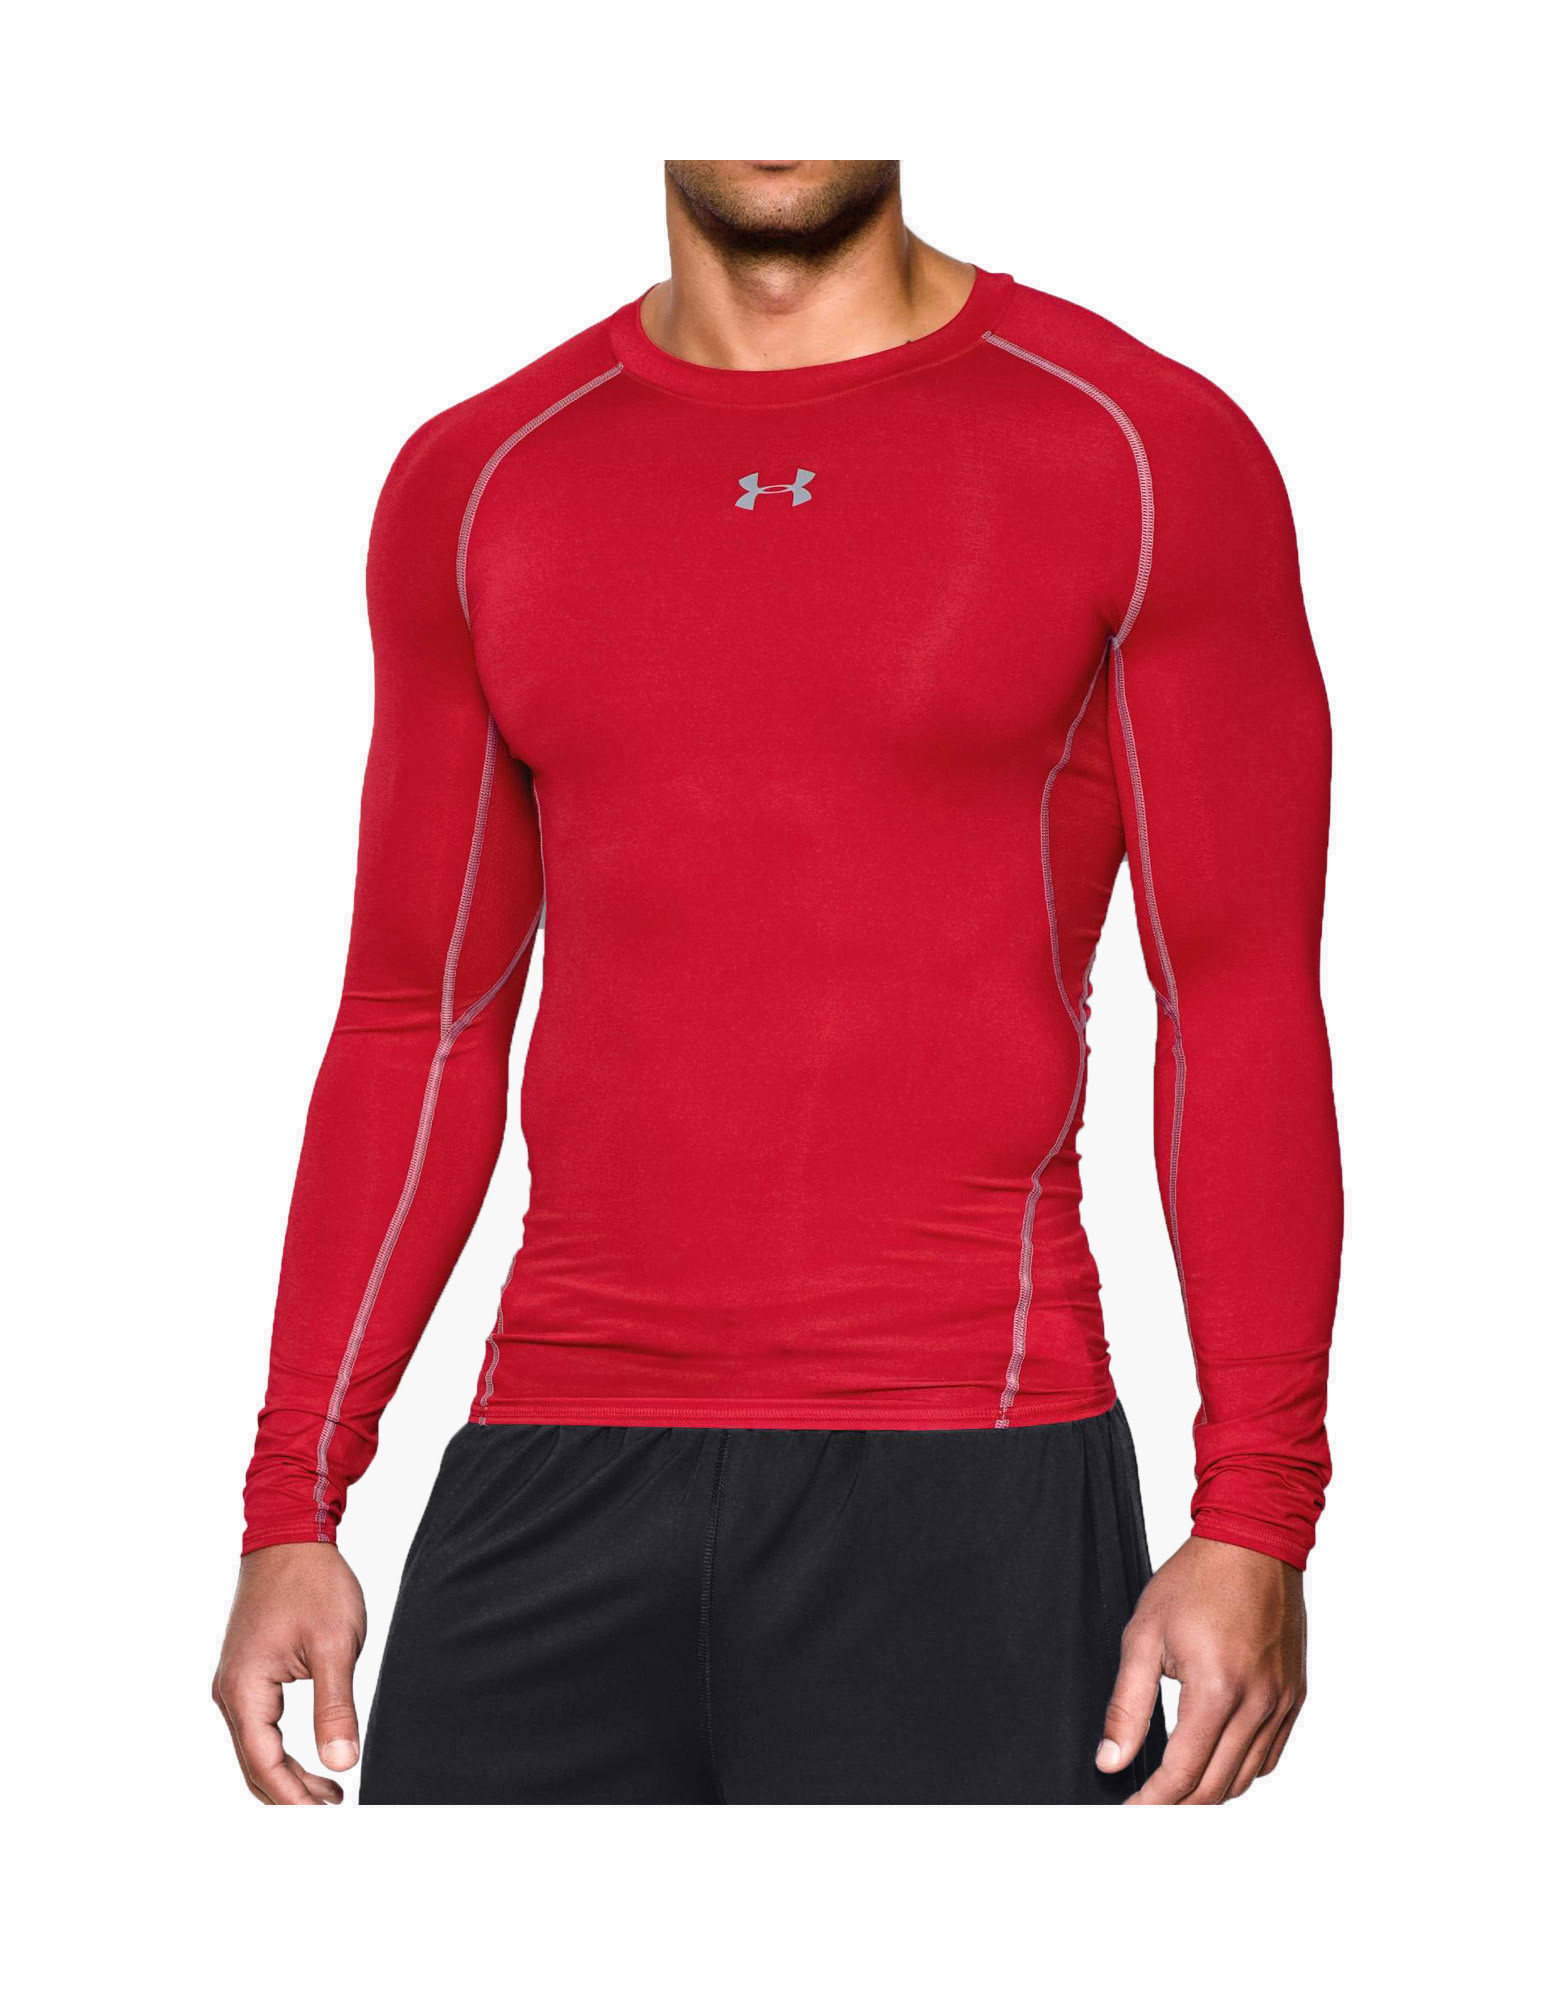 Periodo perioperatorio Perseguir pozo Men's UA HeatGear Armour Long Sleeve Compression Shirt de Under armour,  Color: Rojo - iafstore.com